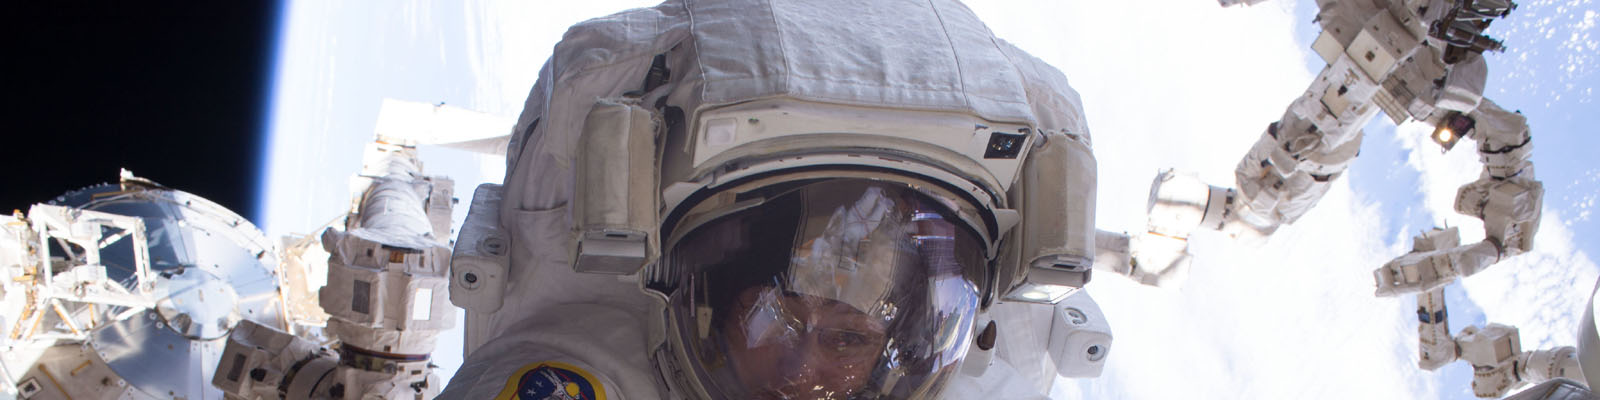 Astronautes Shane Kimbrough et Peggy Whitson